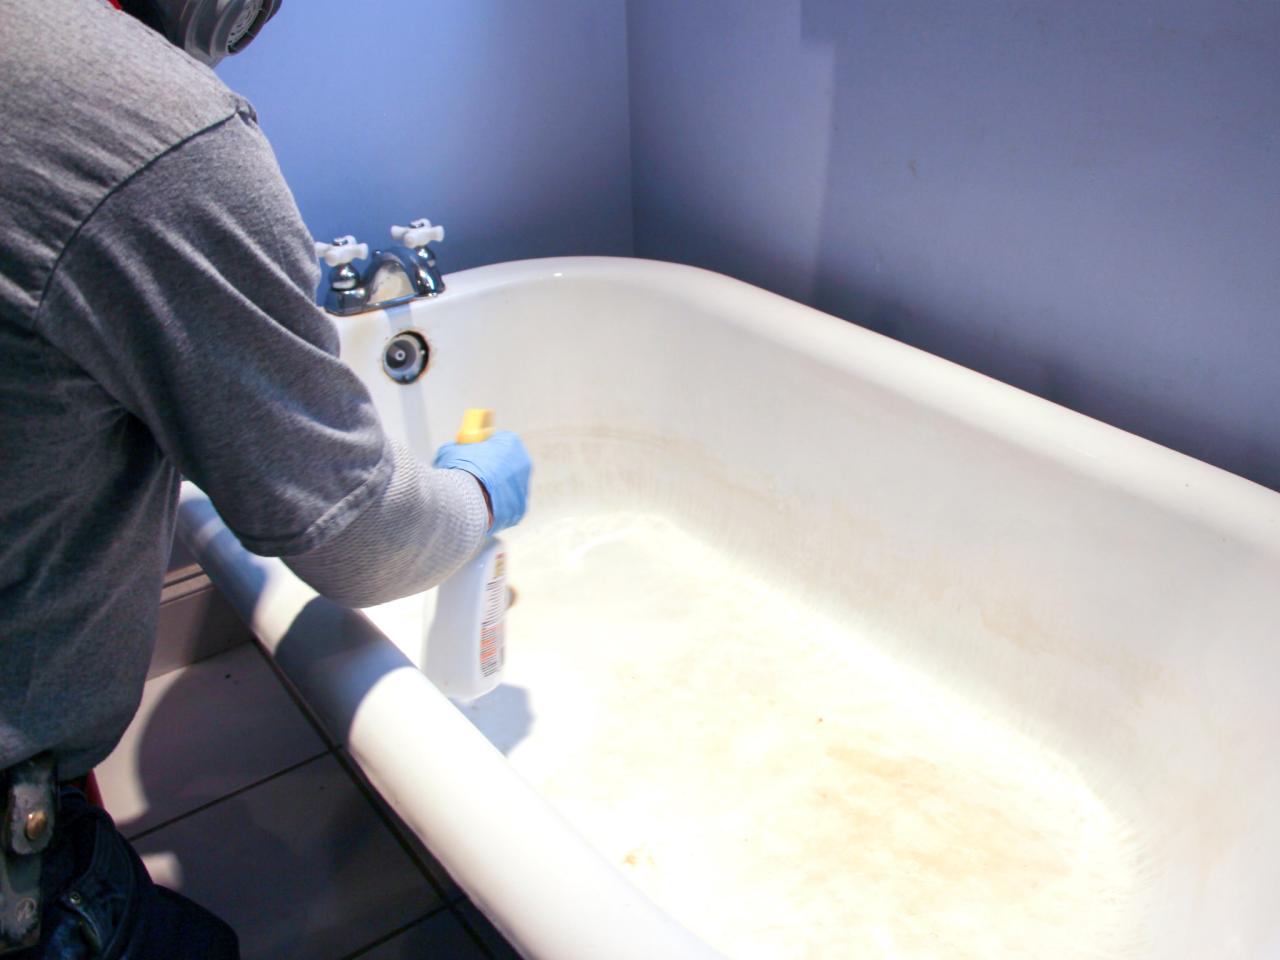 How To Refinish A Bathtub Tos Diy, How To Refurbish A Bathtub